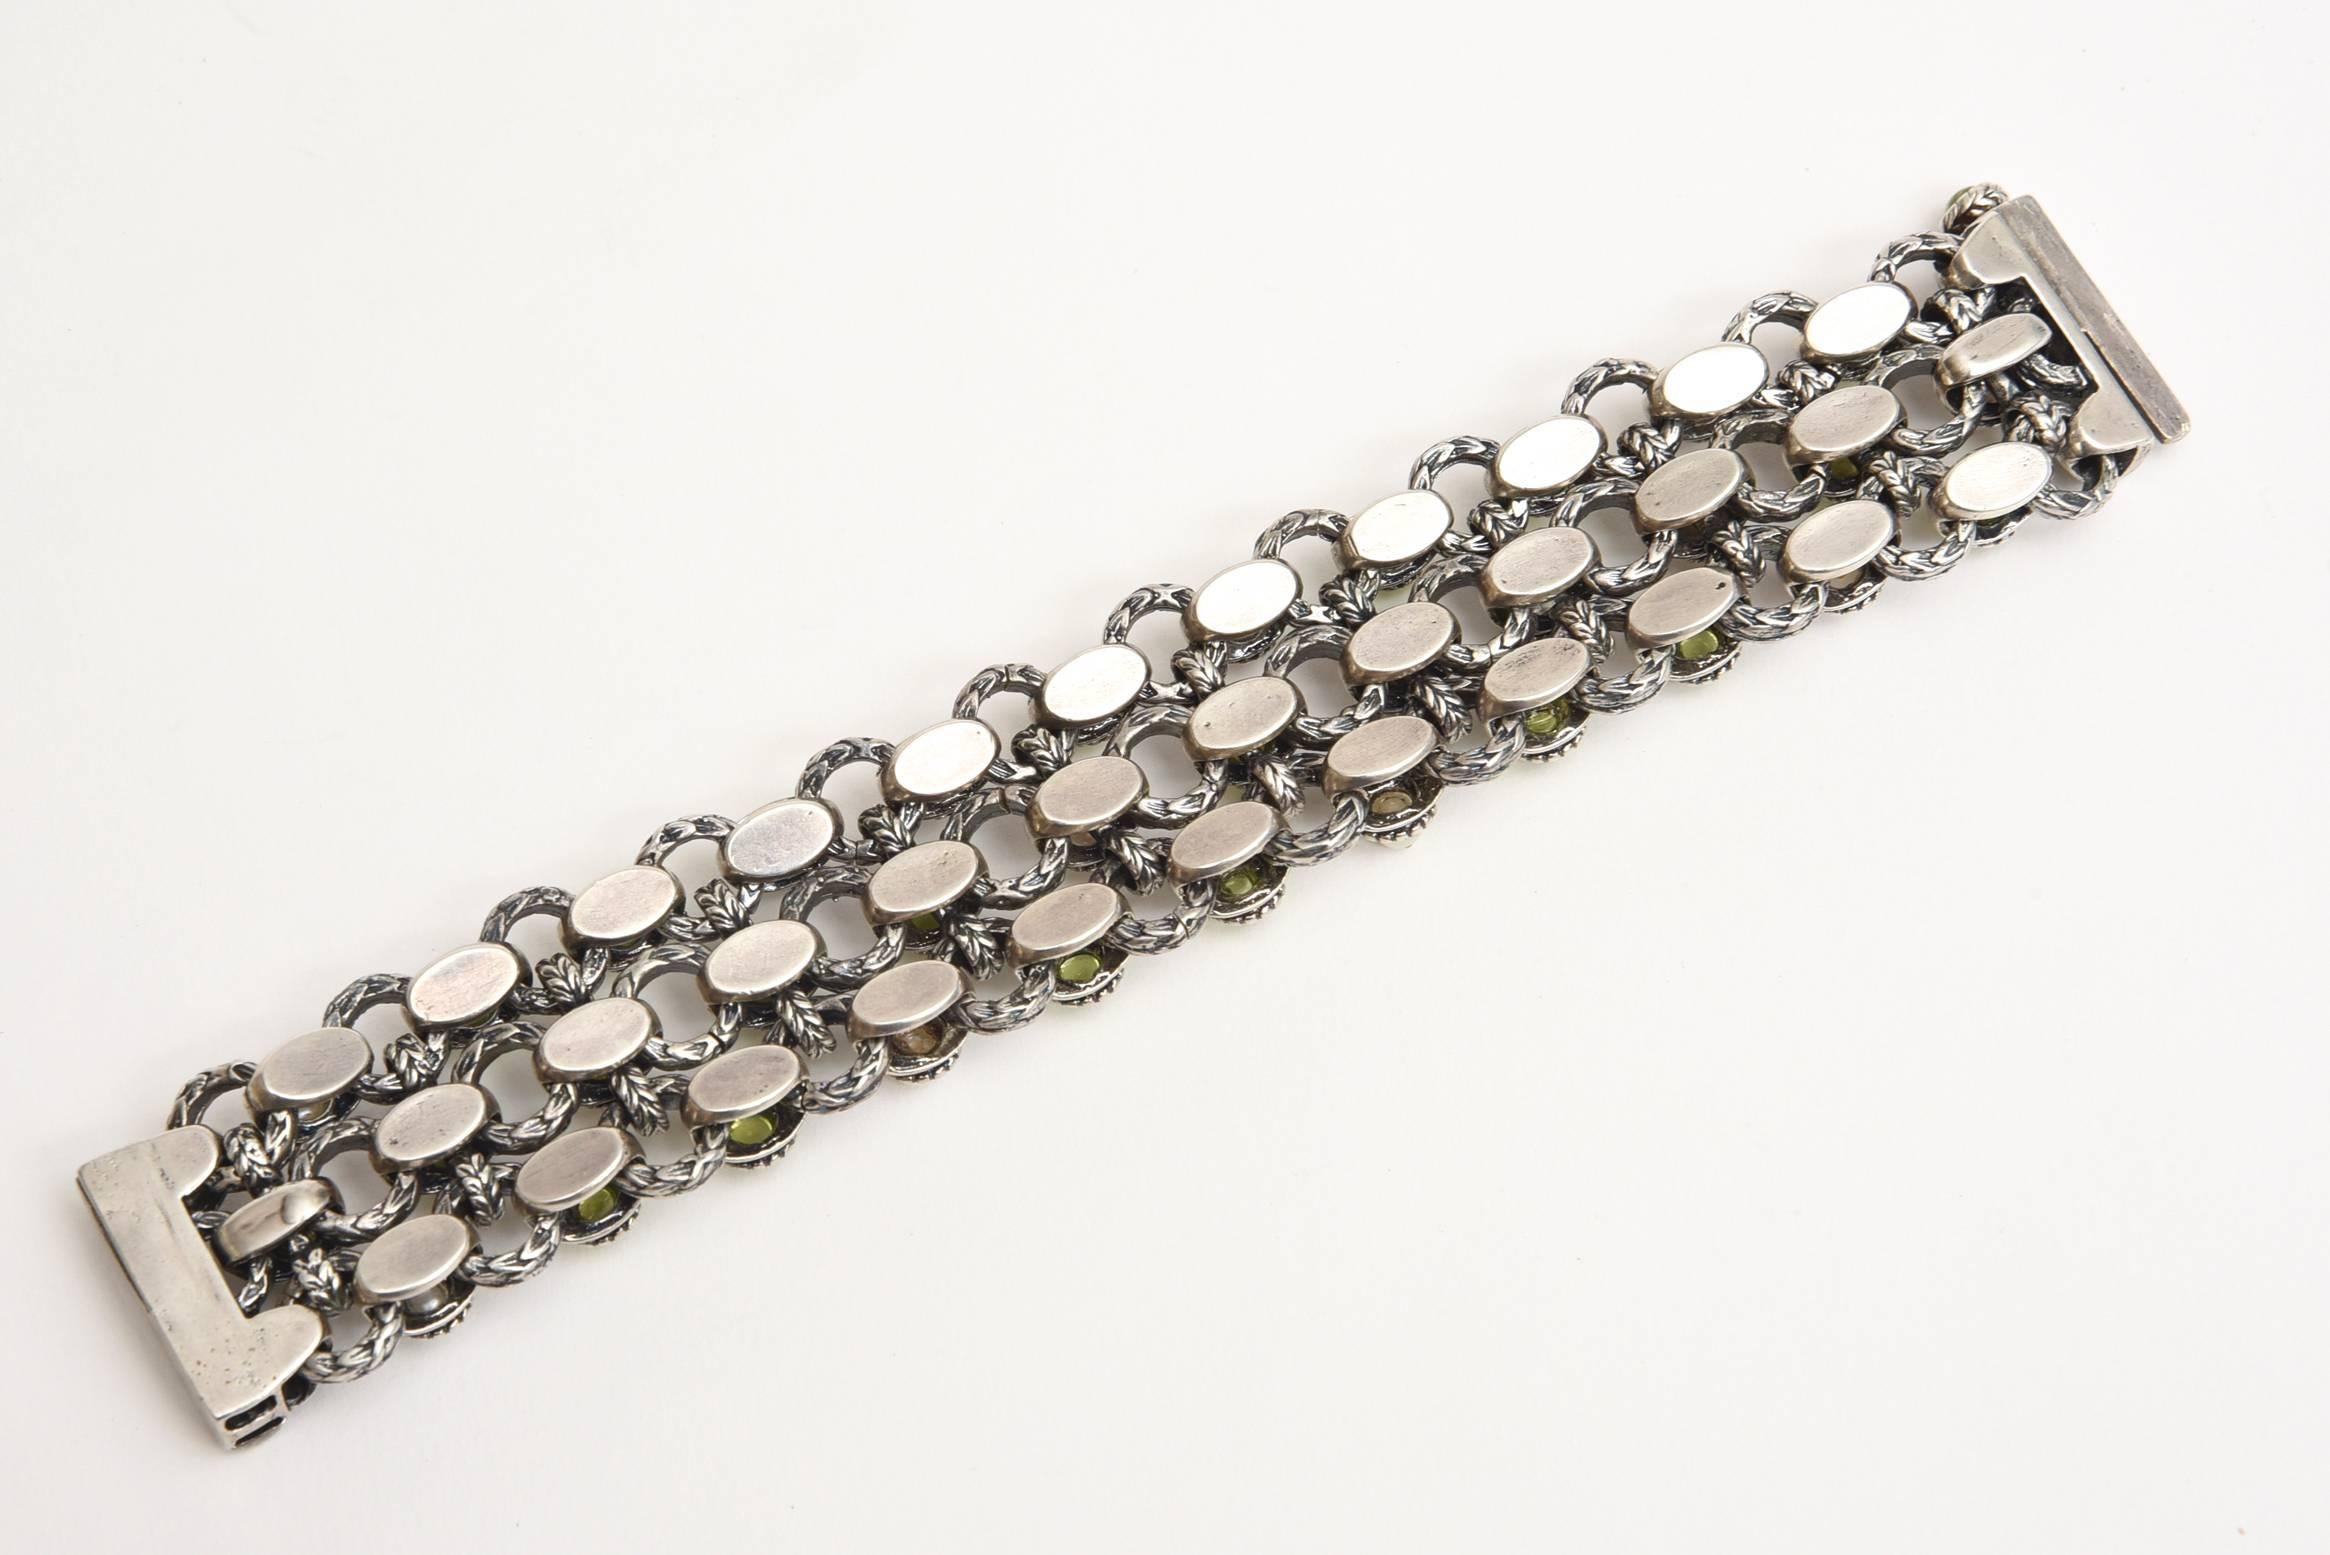 Ce magnifique bracelet conçu par Ned Bowmans, un bijoutier américain, est serti sur de l'argent sterling avec des rangées alternées de perles authentiques et de péridot. Il a été conçu il y a environ 30 ans par lui et a été son premier lancement de